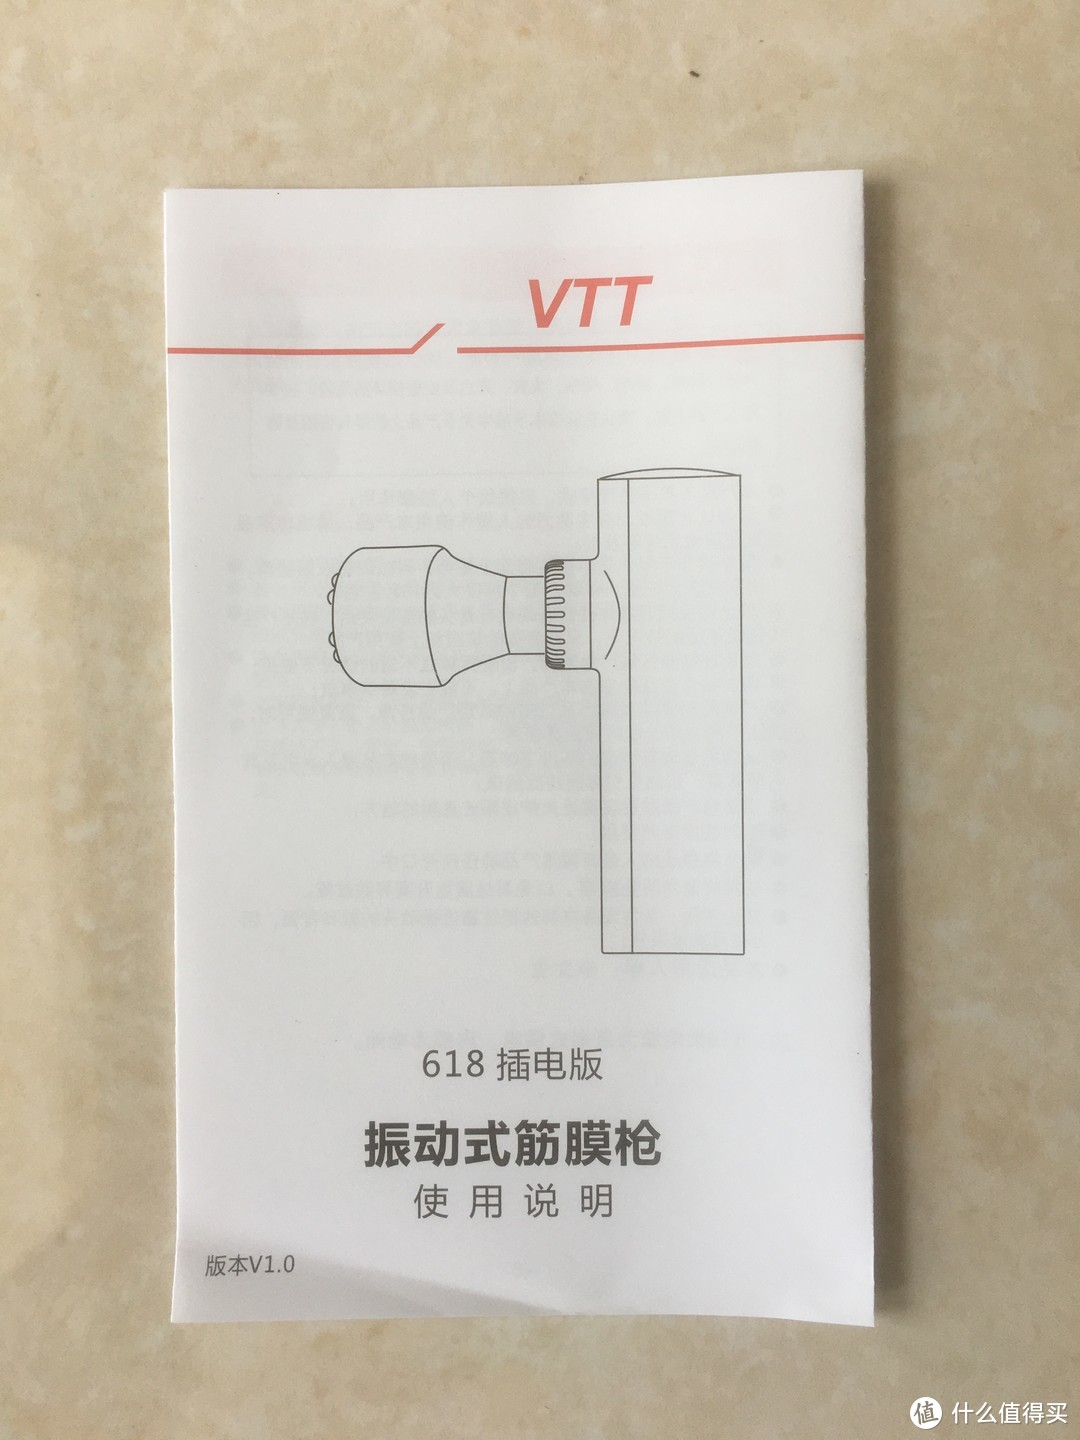 5块多买个震动器值吗？ VTT 618插电版筋膜枪